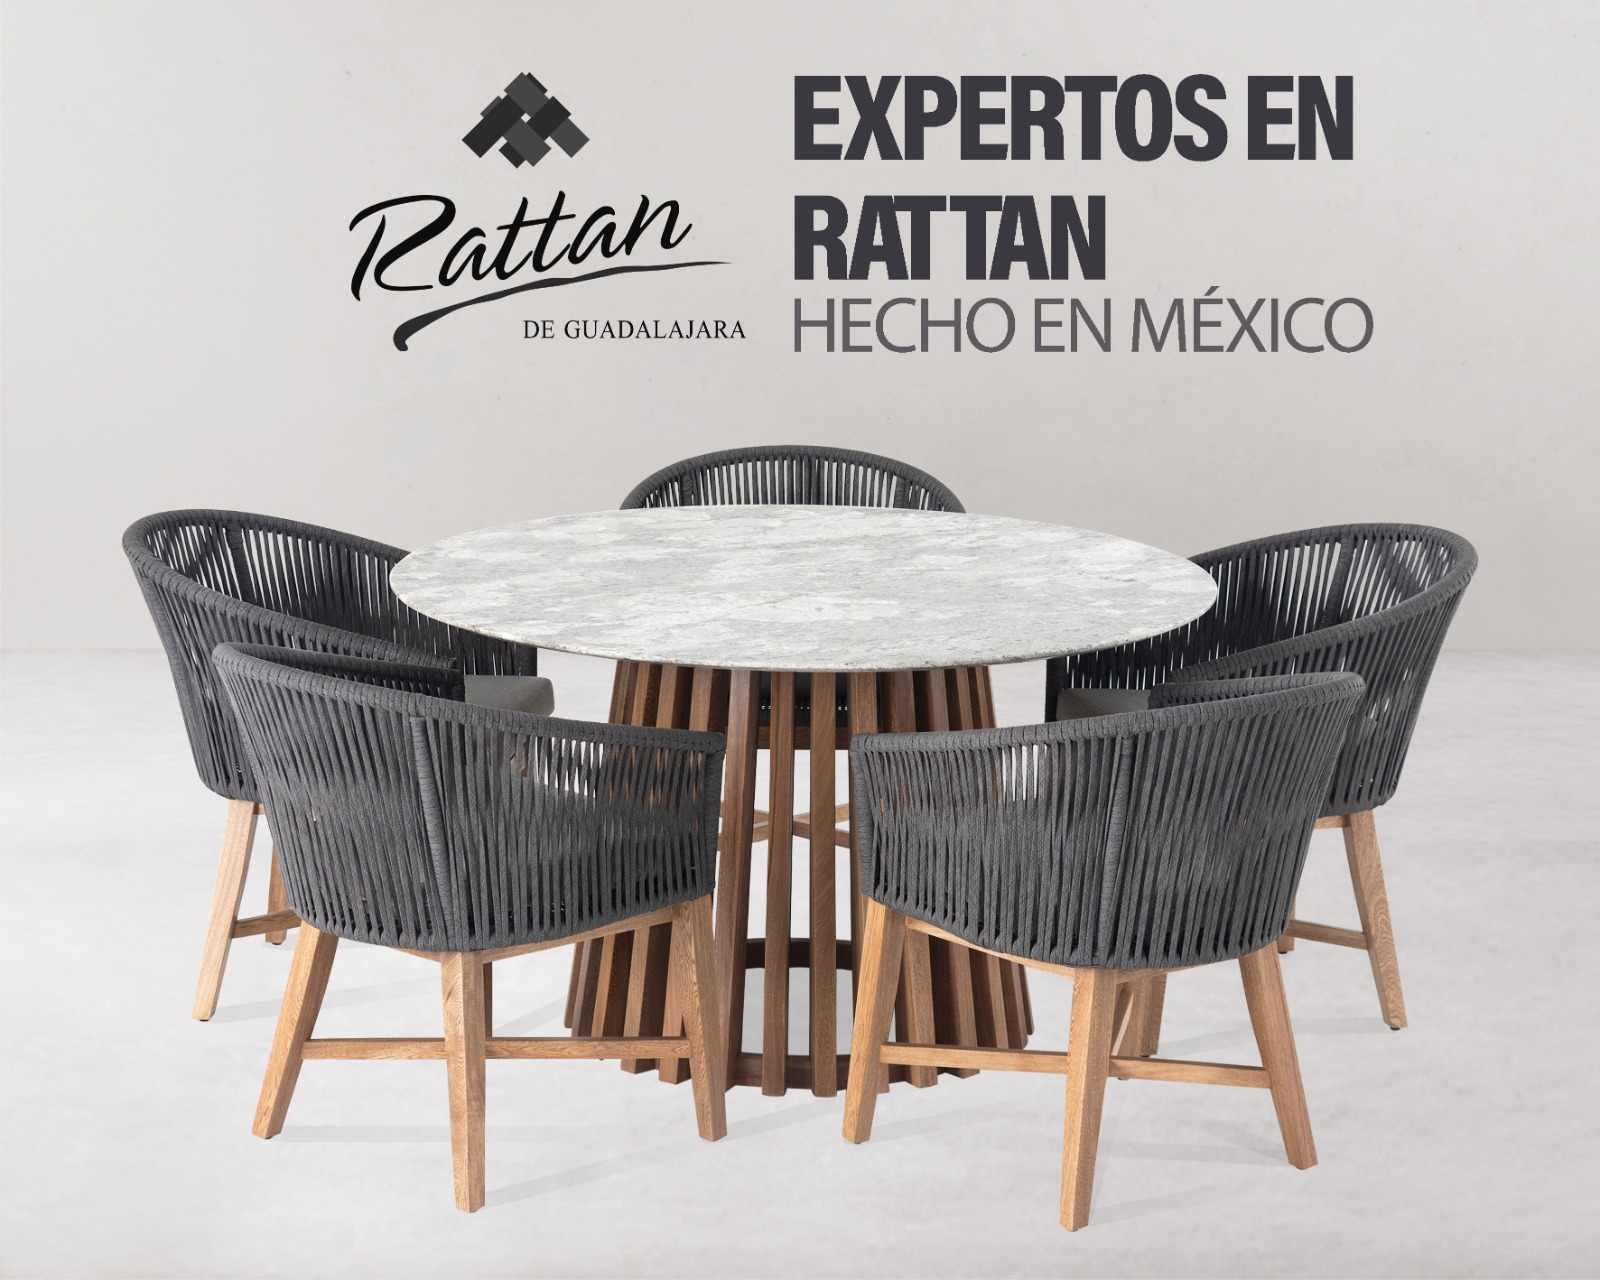 Rattan de Guadalajara